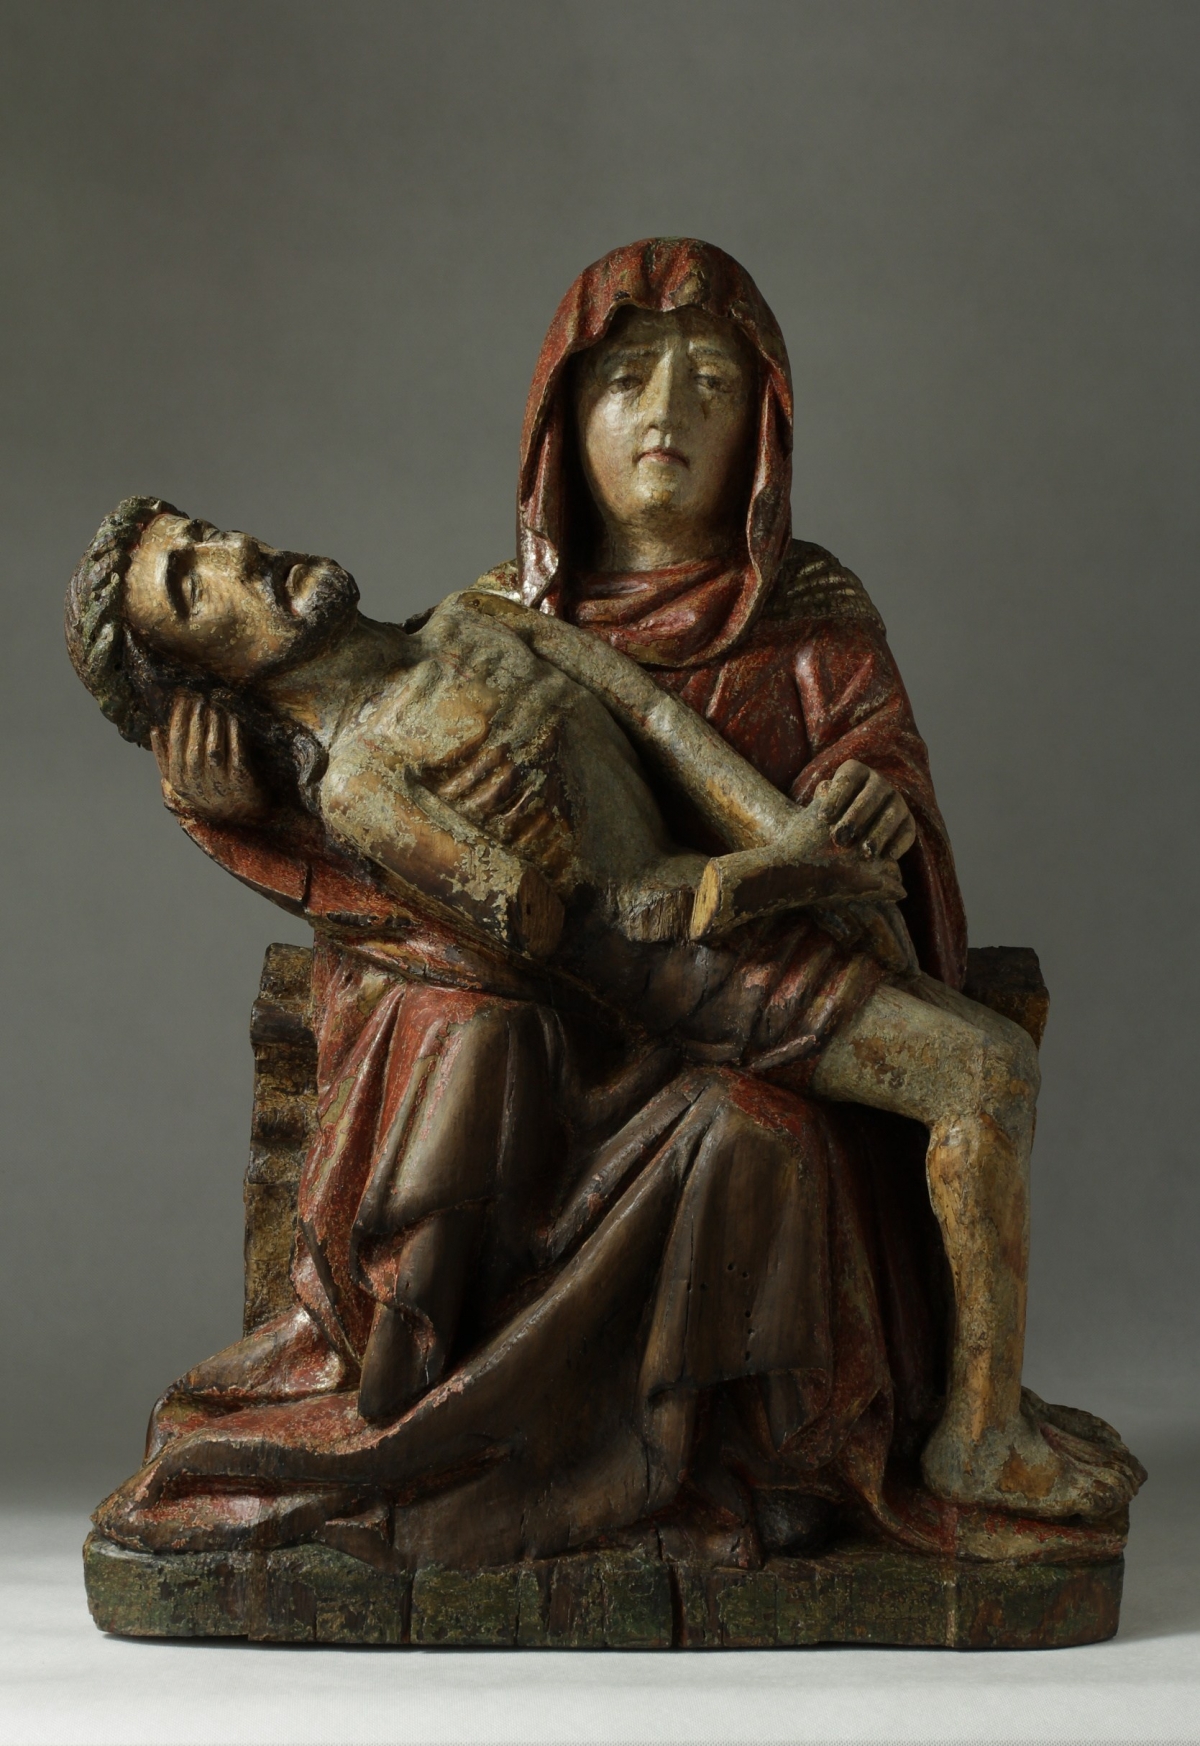 Unknown author, Pieta, col. 1500, sculpture, wood, h.78 cm, unmarked, Regional Gallery Liberec, restorer: Marie Sklenářová